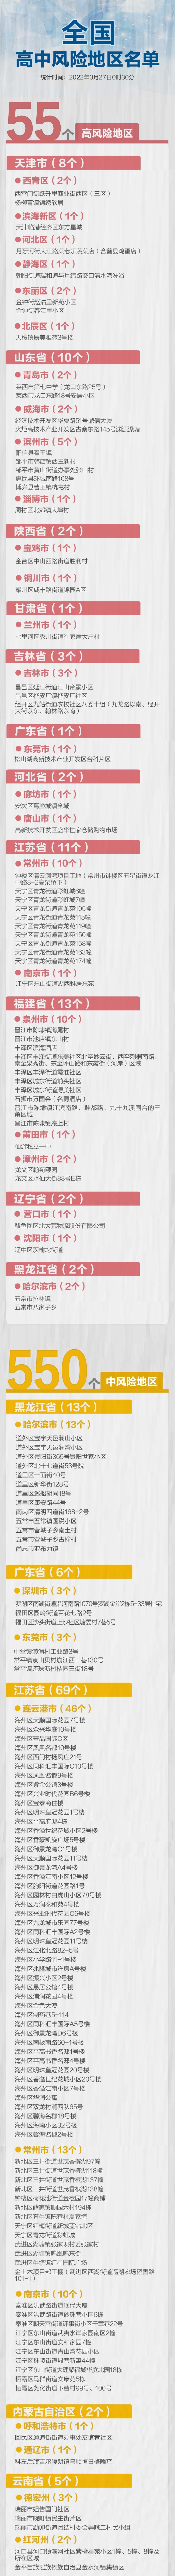 上海昨日本土新增52+570：死亡3例 最大年龄88岁 - ICECasino - 百度热点 百度热点快讯